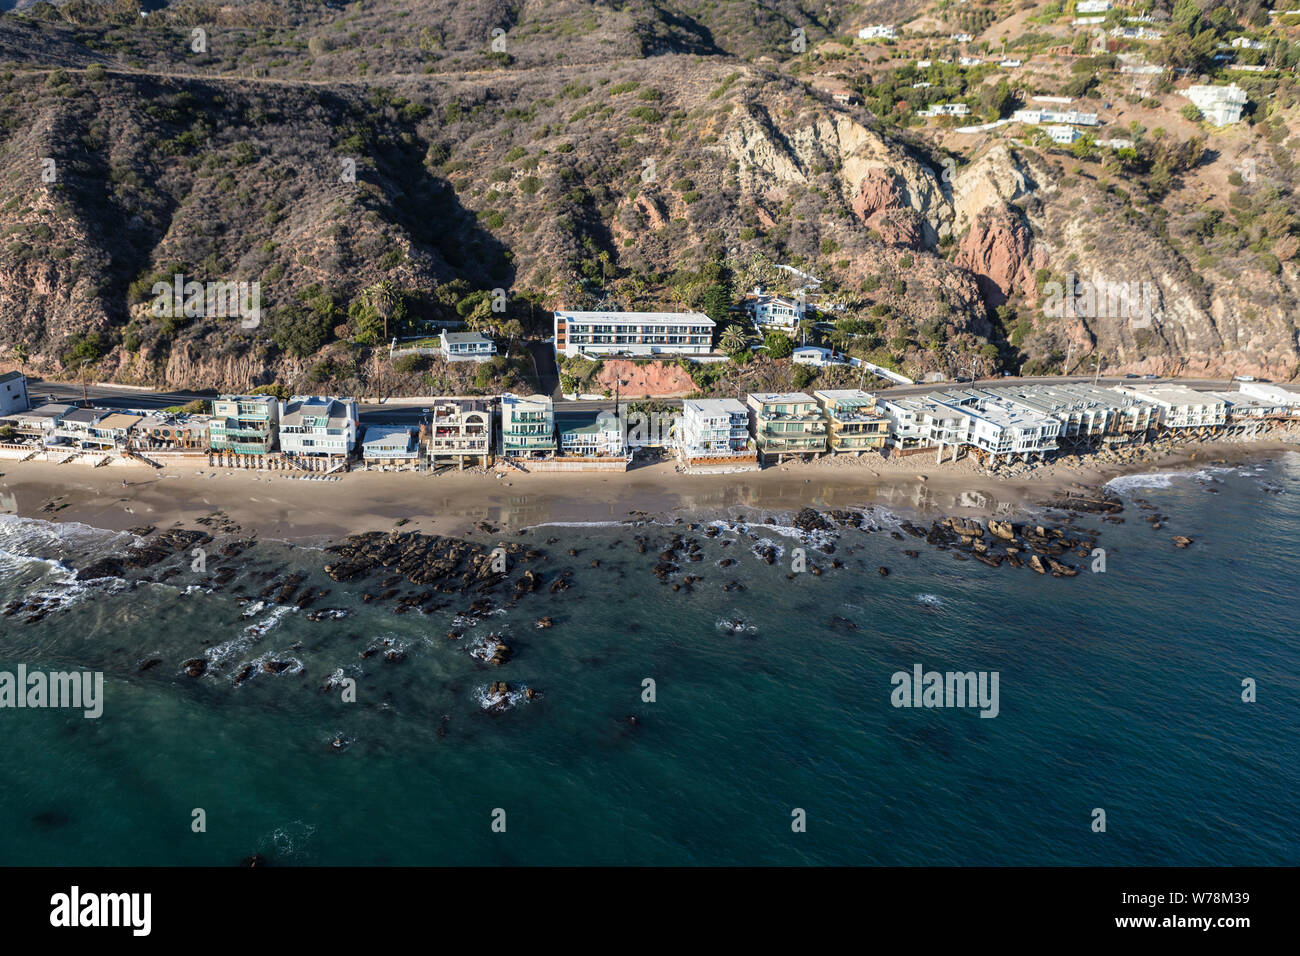 Vue aérienne de Malibu et maisons du littoral montagnes de Santa Monica au nord de Los Angeles sur la route 1 dans le sud de la Californie. Banque D'Images